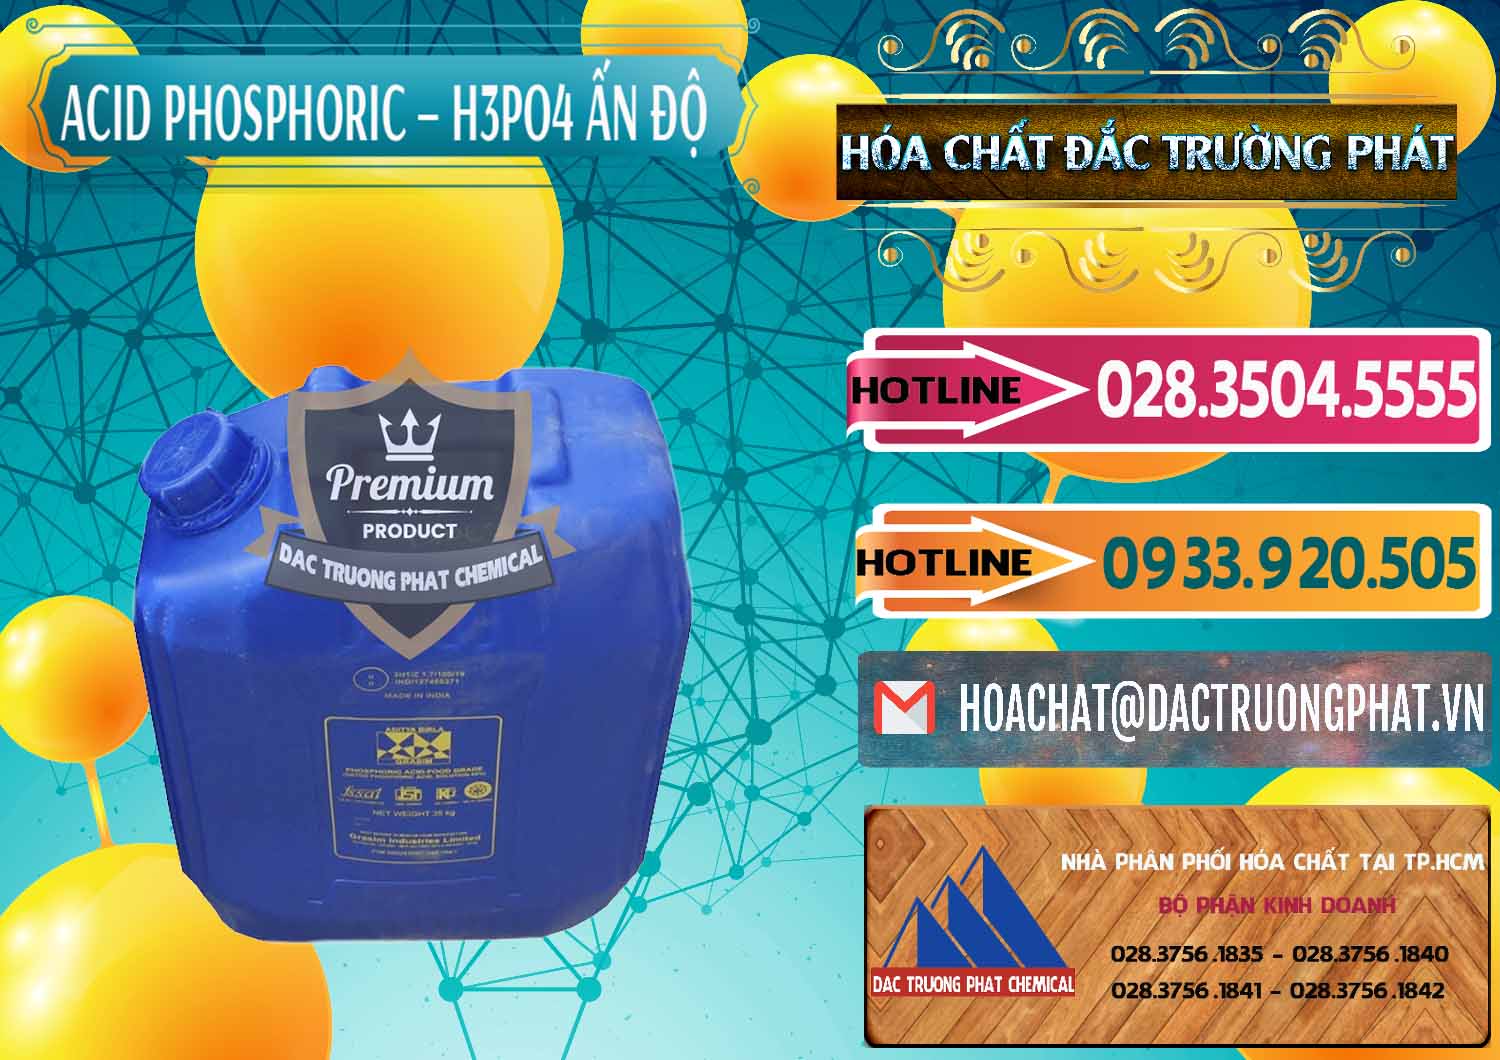 Nơi bán và cung cấp Axit Phosphoric H3PO4 85% Ấn Độ - 0350 - Chuyên bán ( phân phối ) hóa chất tại TP.HCM - dactruongphat.vn